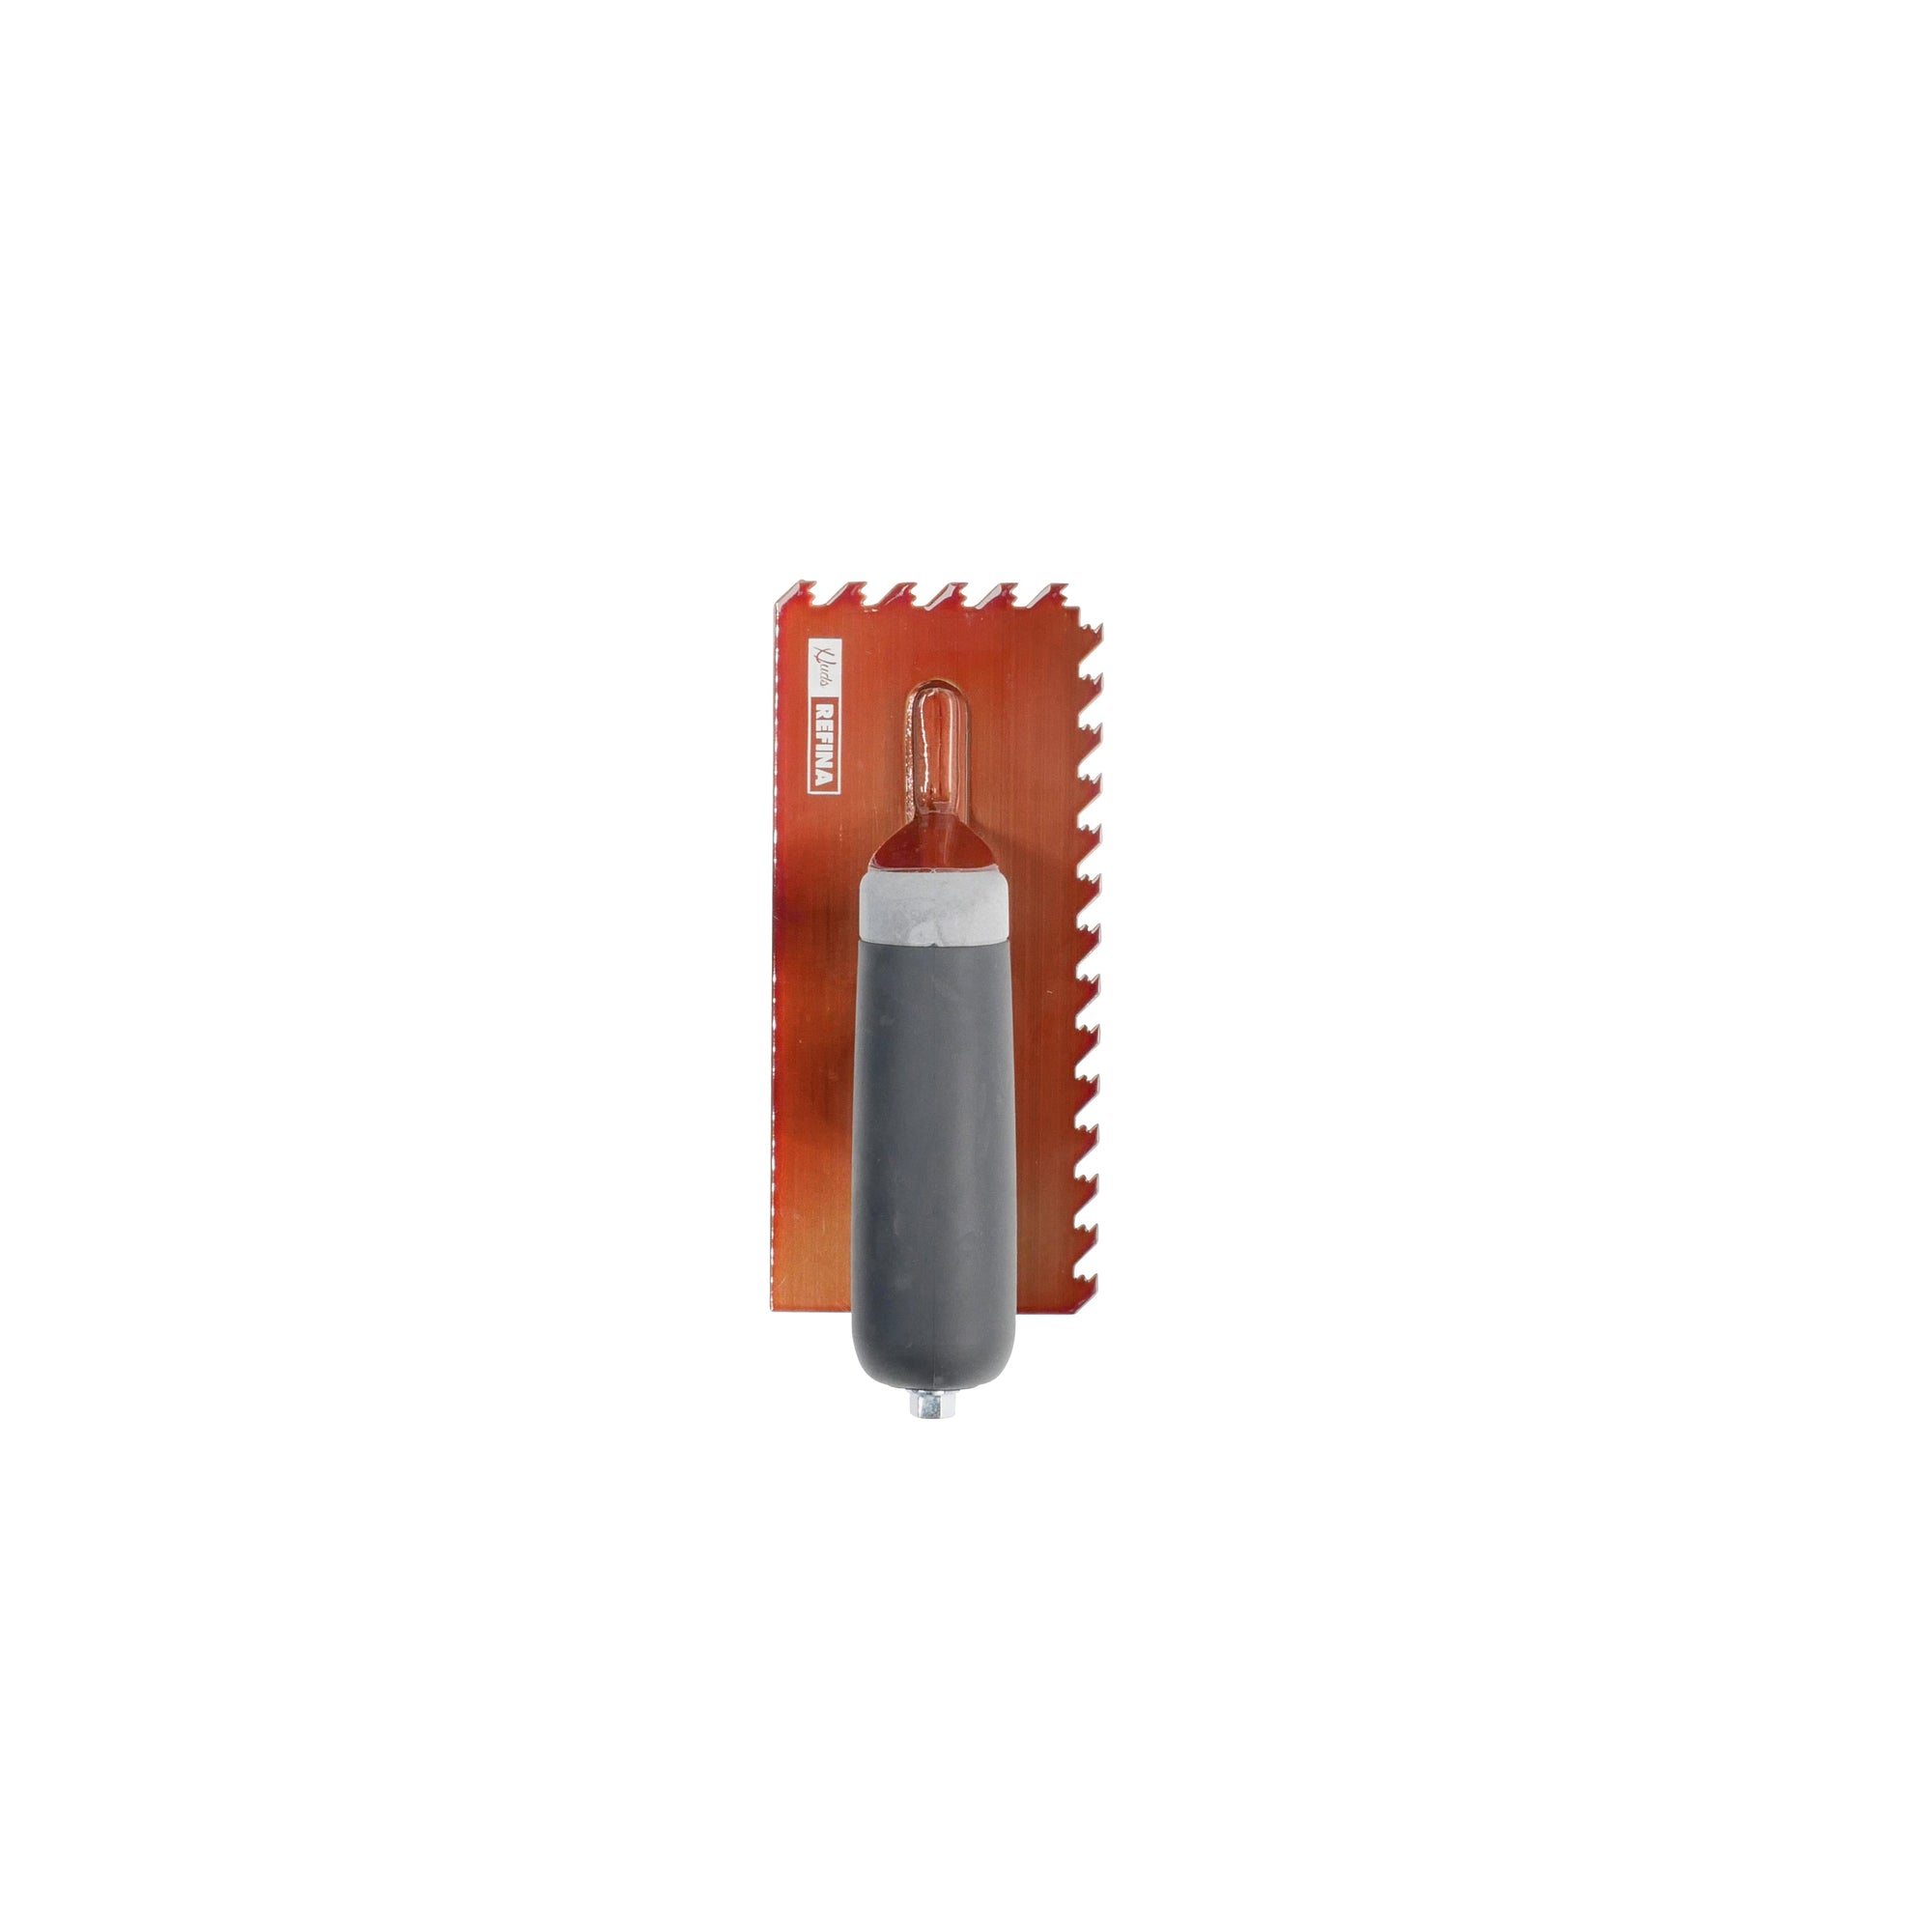 NotchTile Midget Trowel 8" 6mm Copper (190x85x90mm) - Calidad Tools